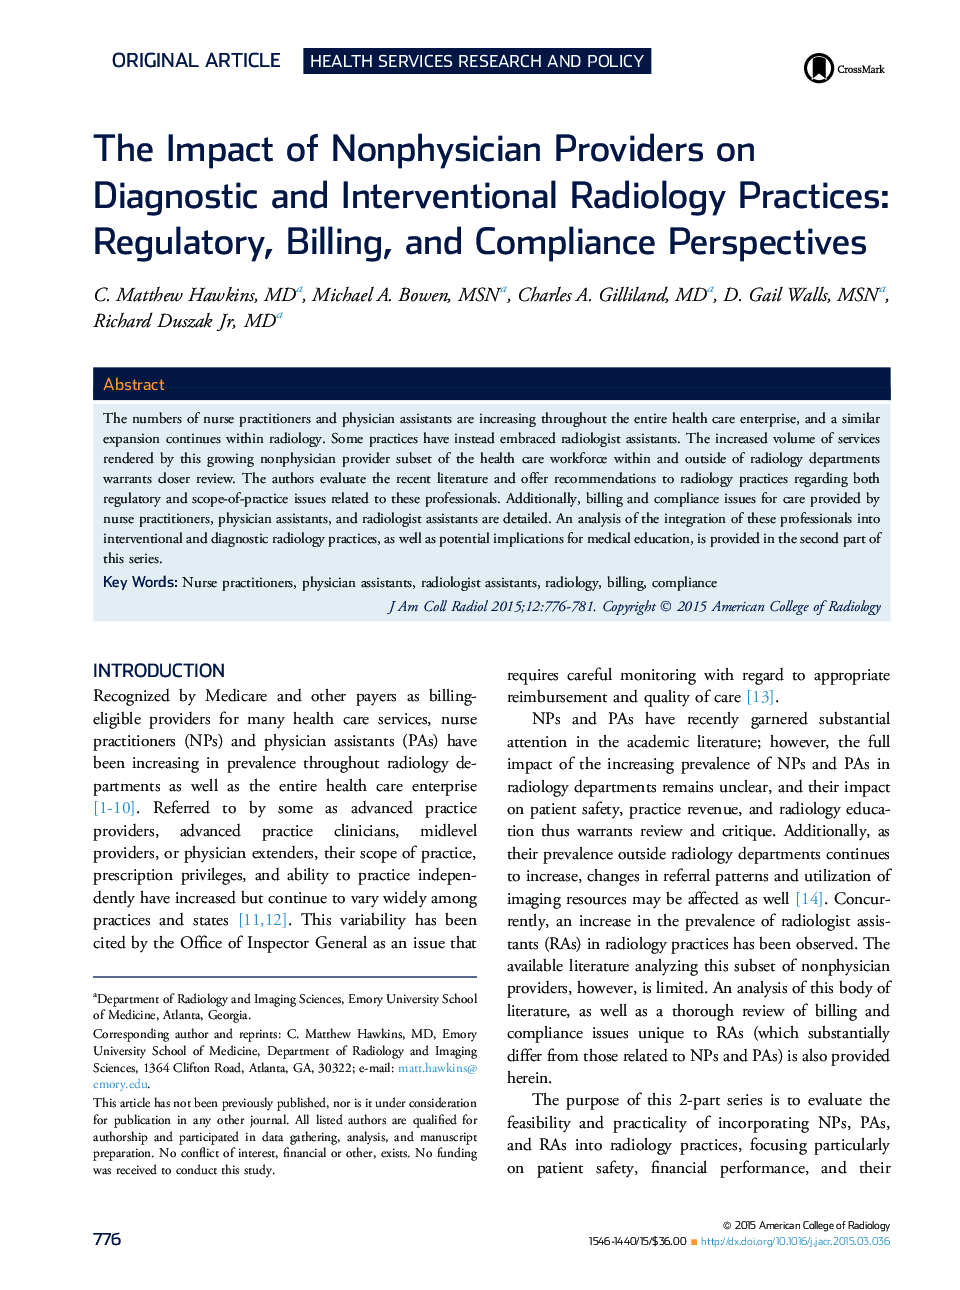 تأثیر ارائه دهندگان غیرفیزیک در روشهای رادیولوژی تشخیصی و مداخله: تنظیمات، صورتحساب و دیدگاههای مطابقت 